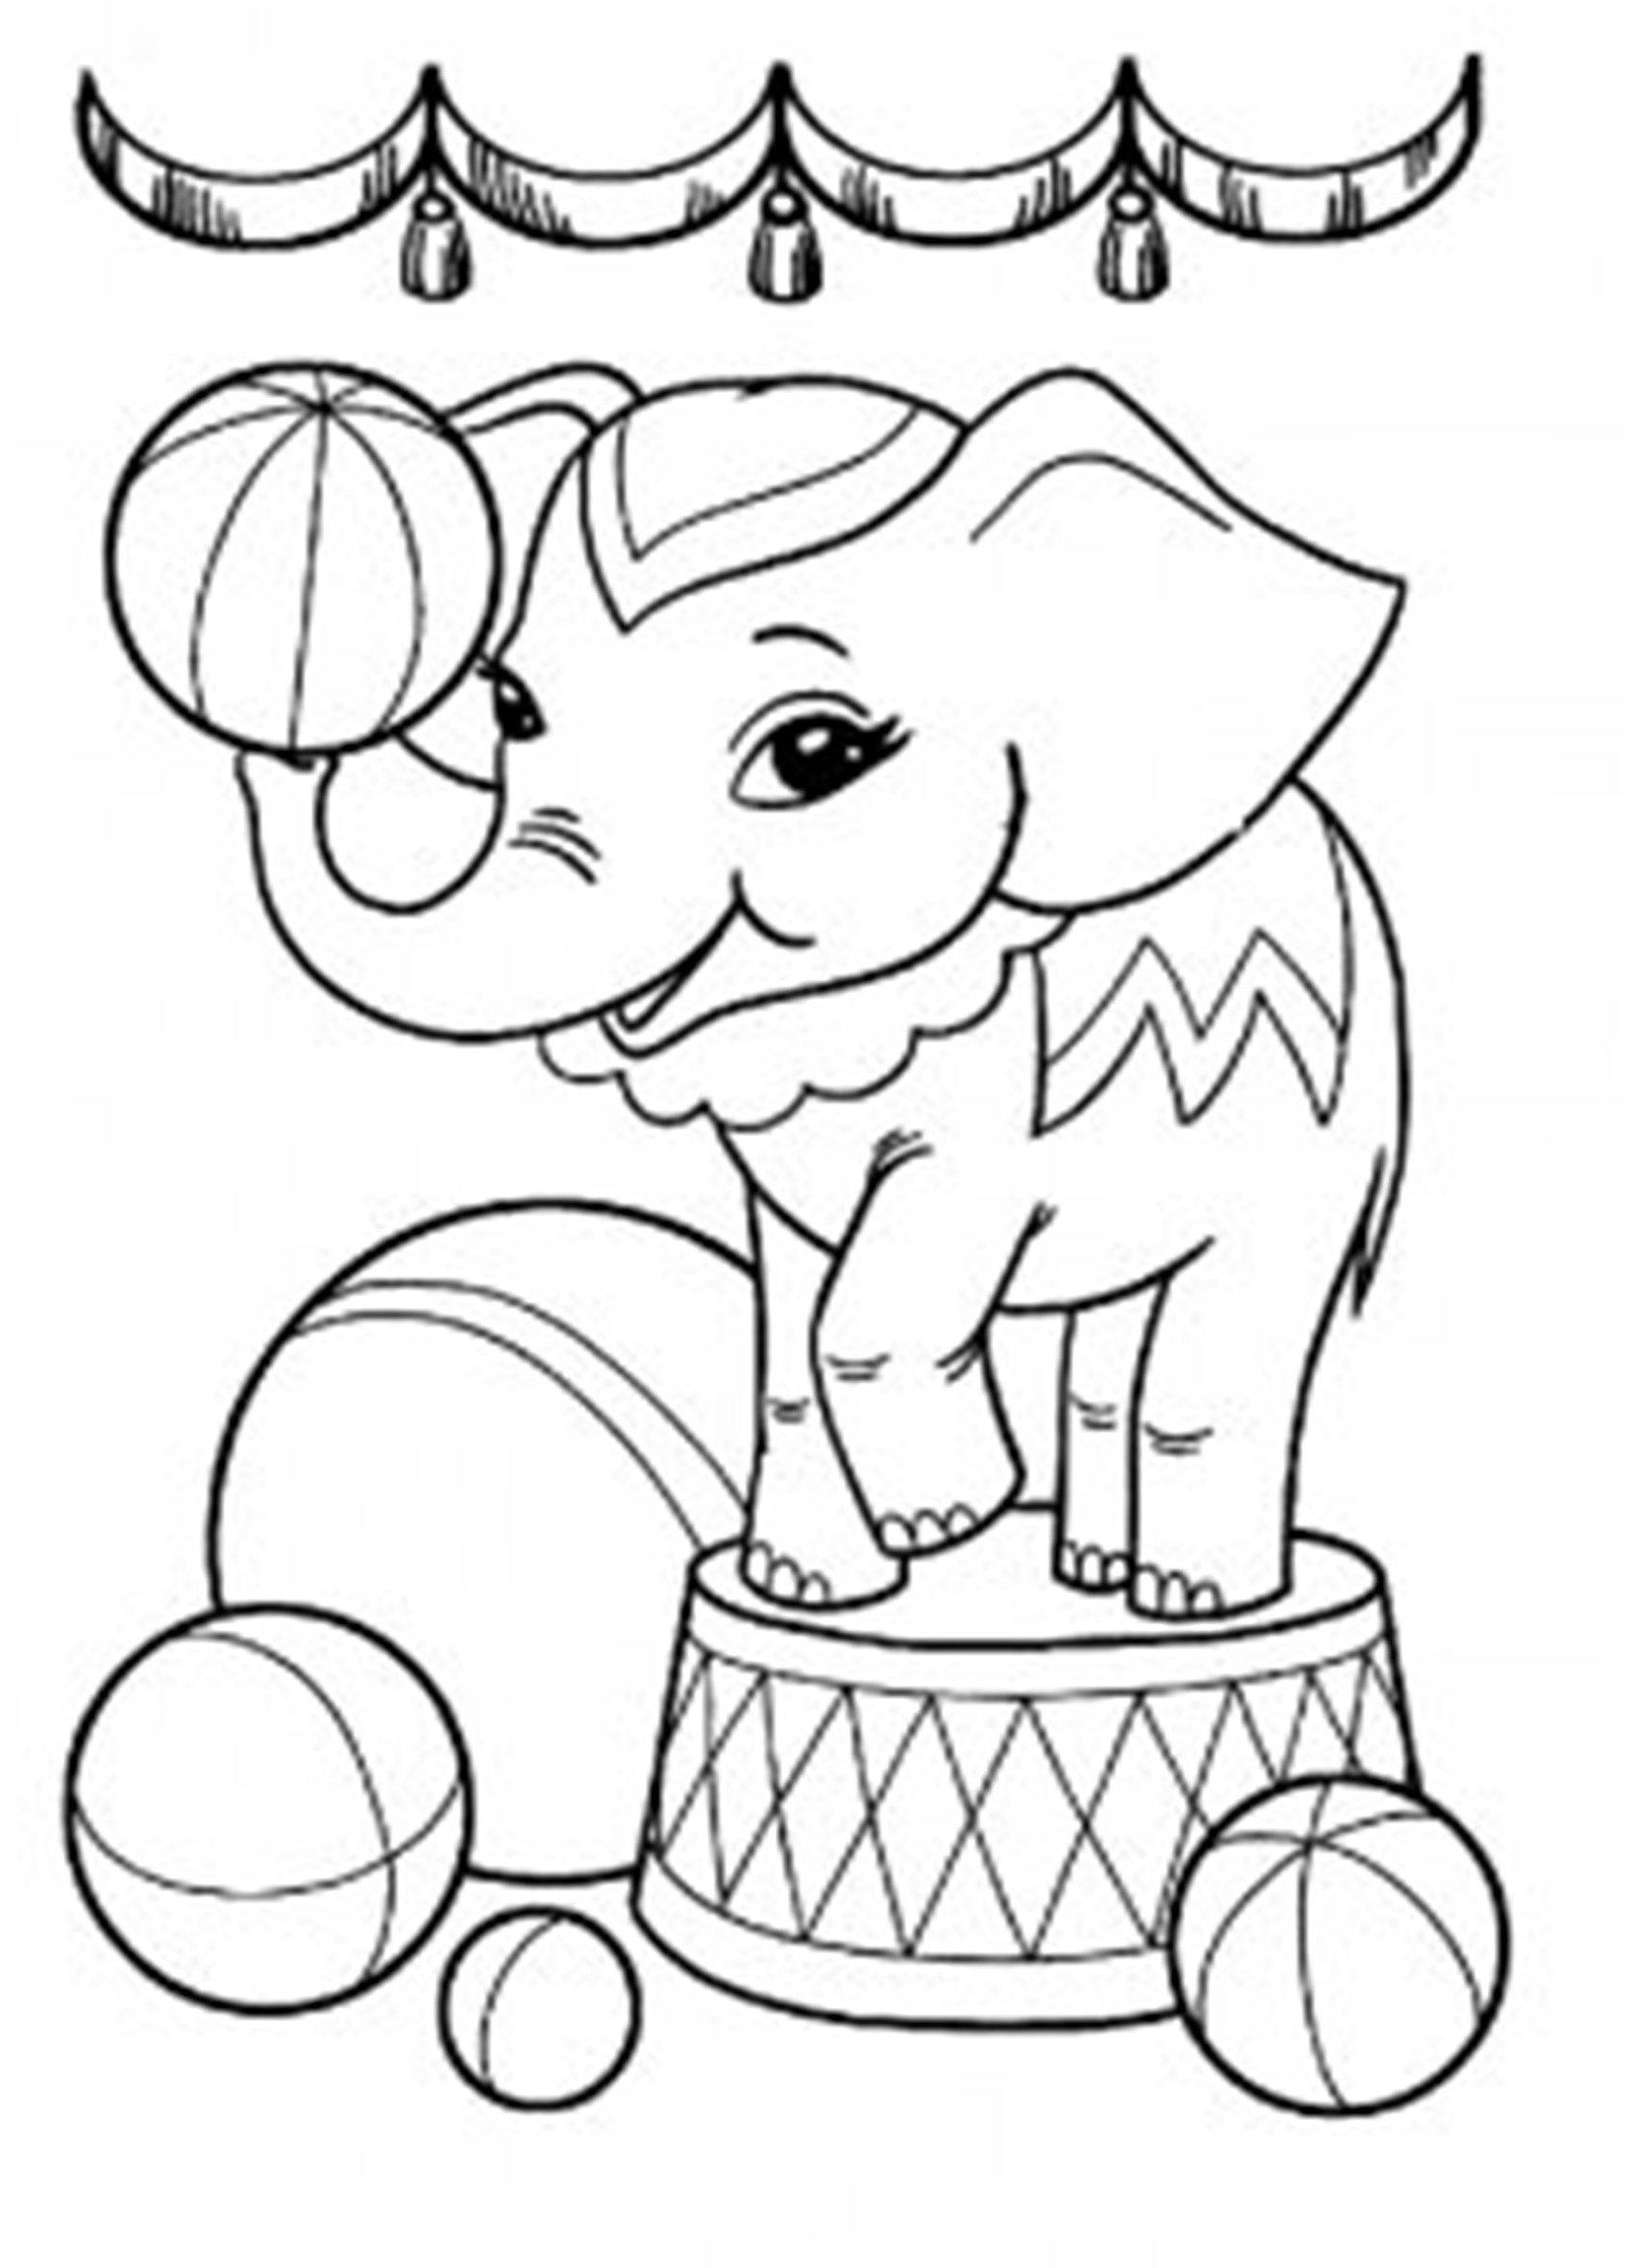 Розмальовки казках Маленький слоненя стоїть на тумбі і балансує м'ячиком на своєму хоботі